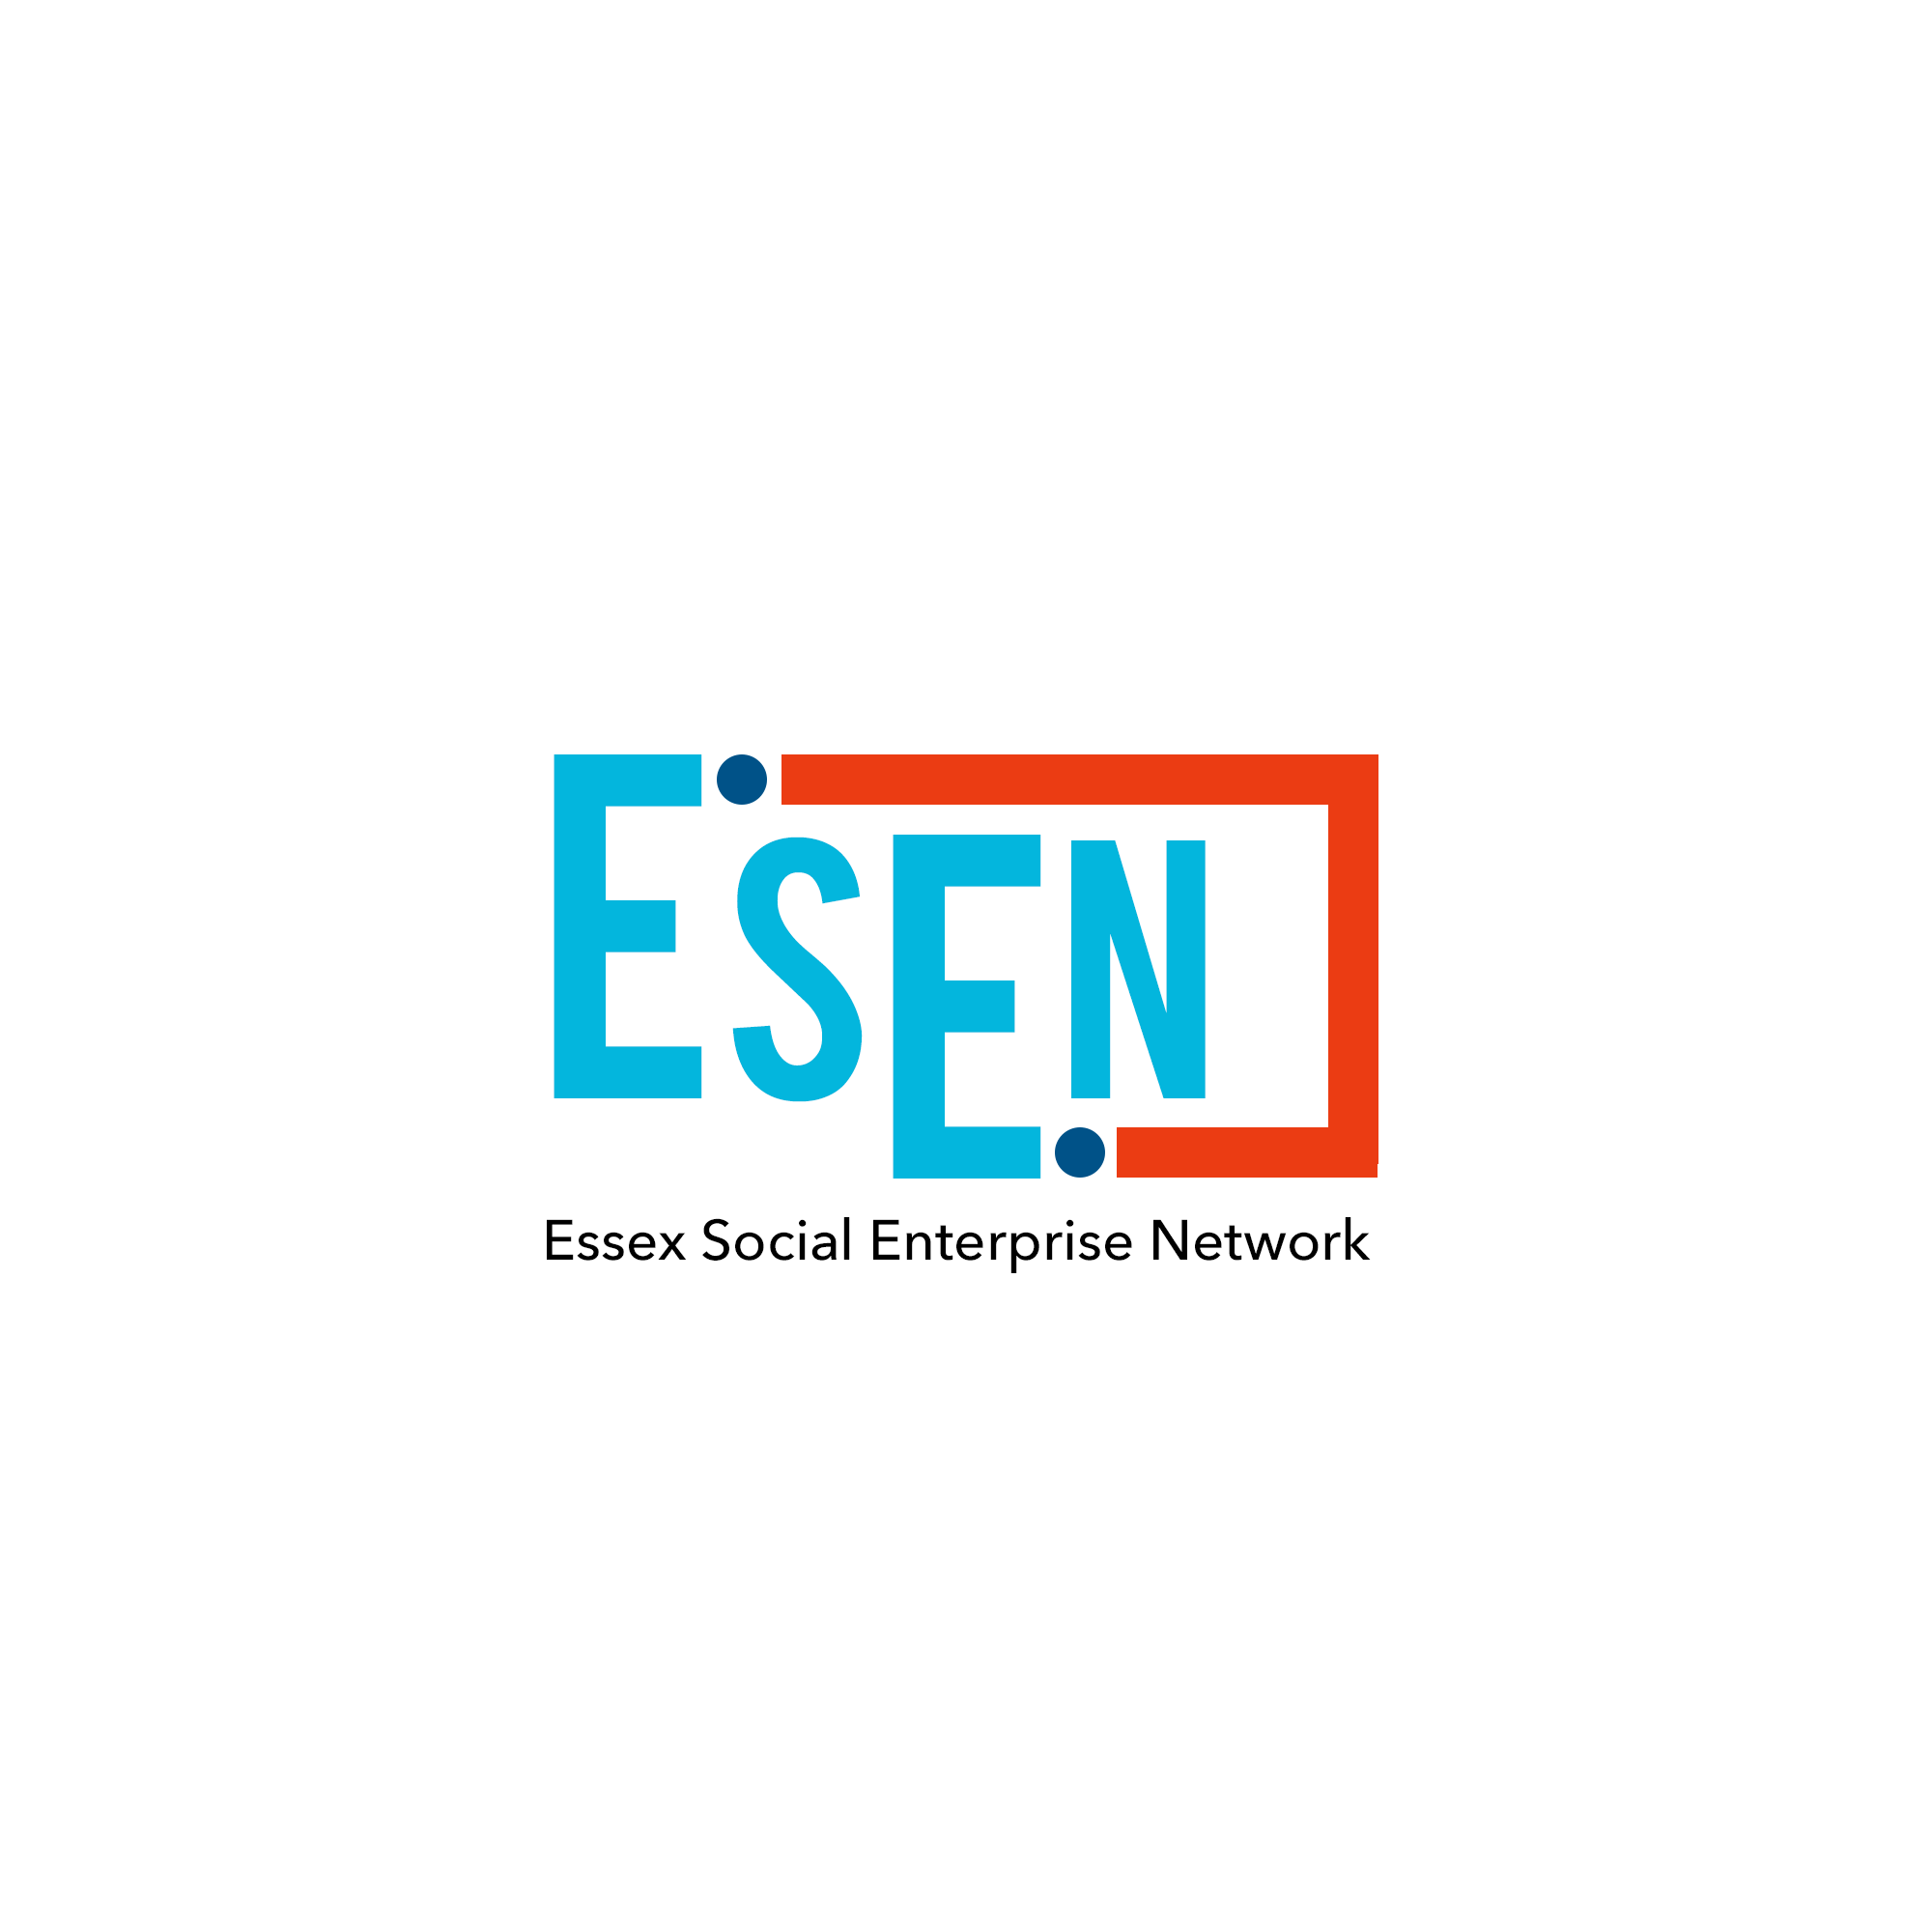 Essex Social Enterprise Network